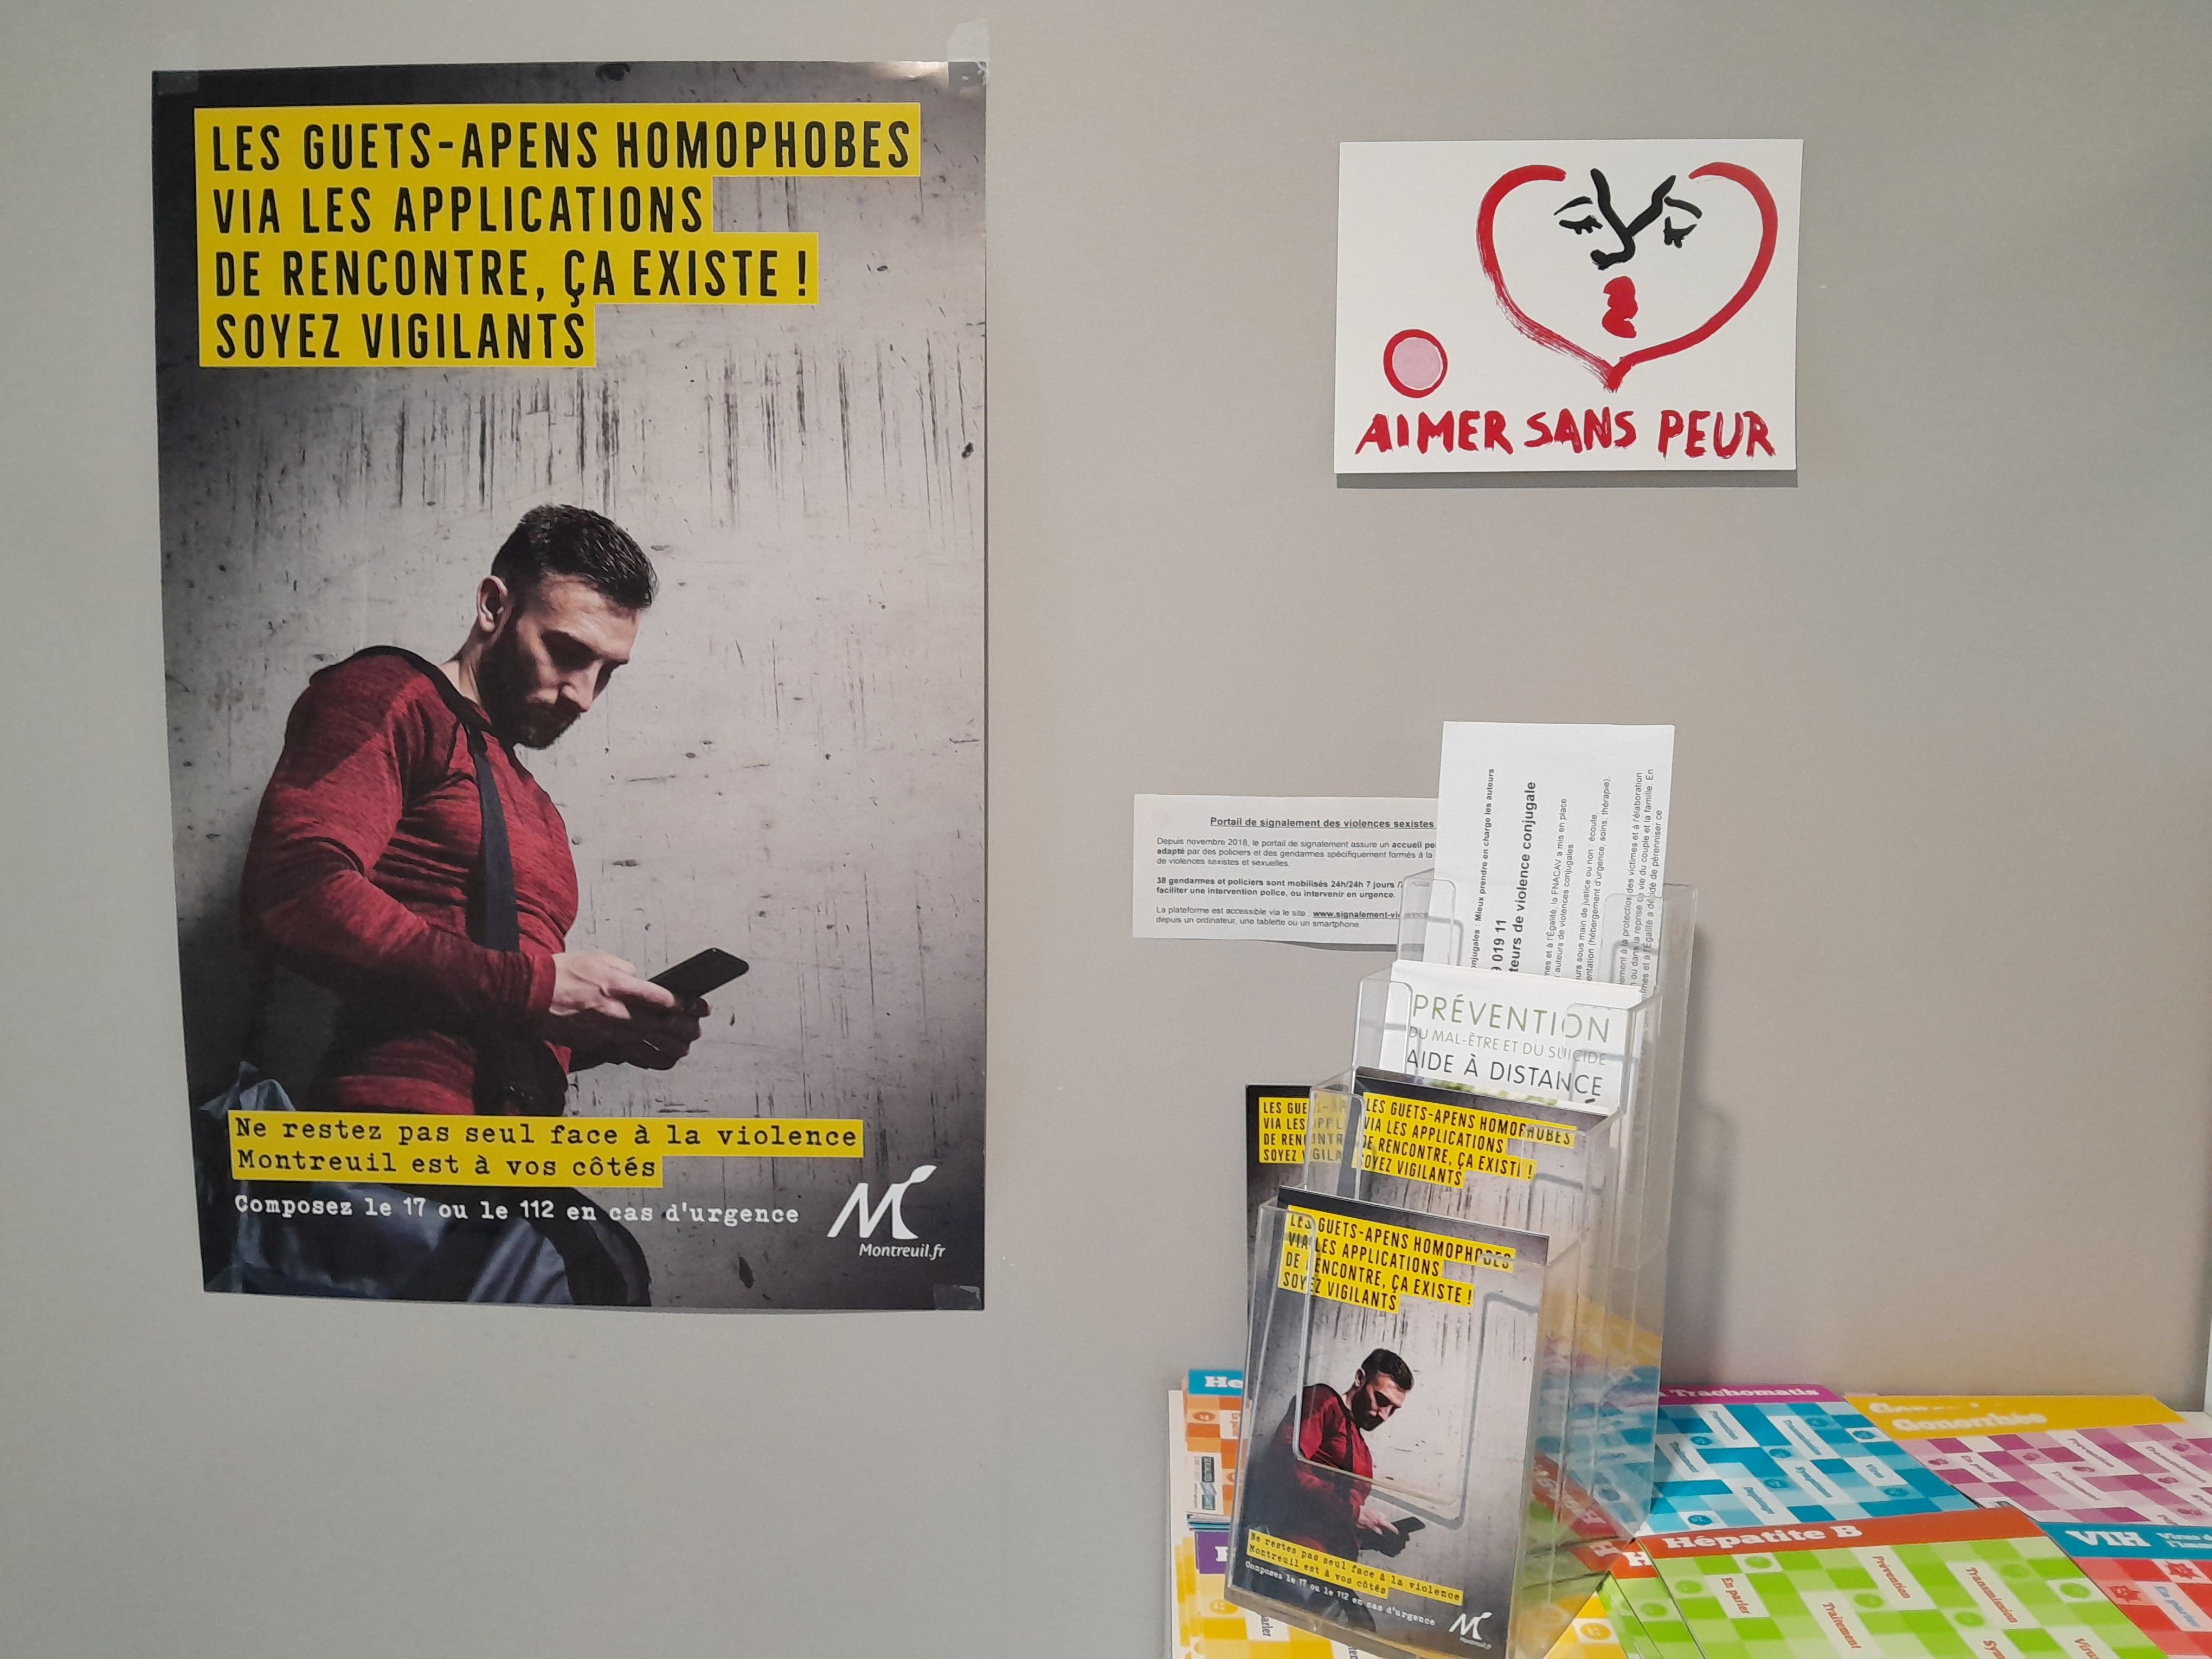 Montreuil (Seine-Saint-Denis), ce mardi. Après trois agressions survenues cette année dans la ville, la municipalité déploie une campagne de prévention pour lutter contre les guets-apens homophobes sur les applis de rencontre. DR